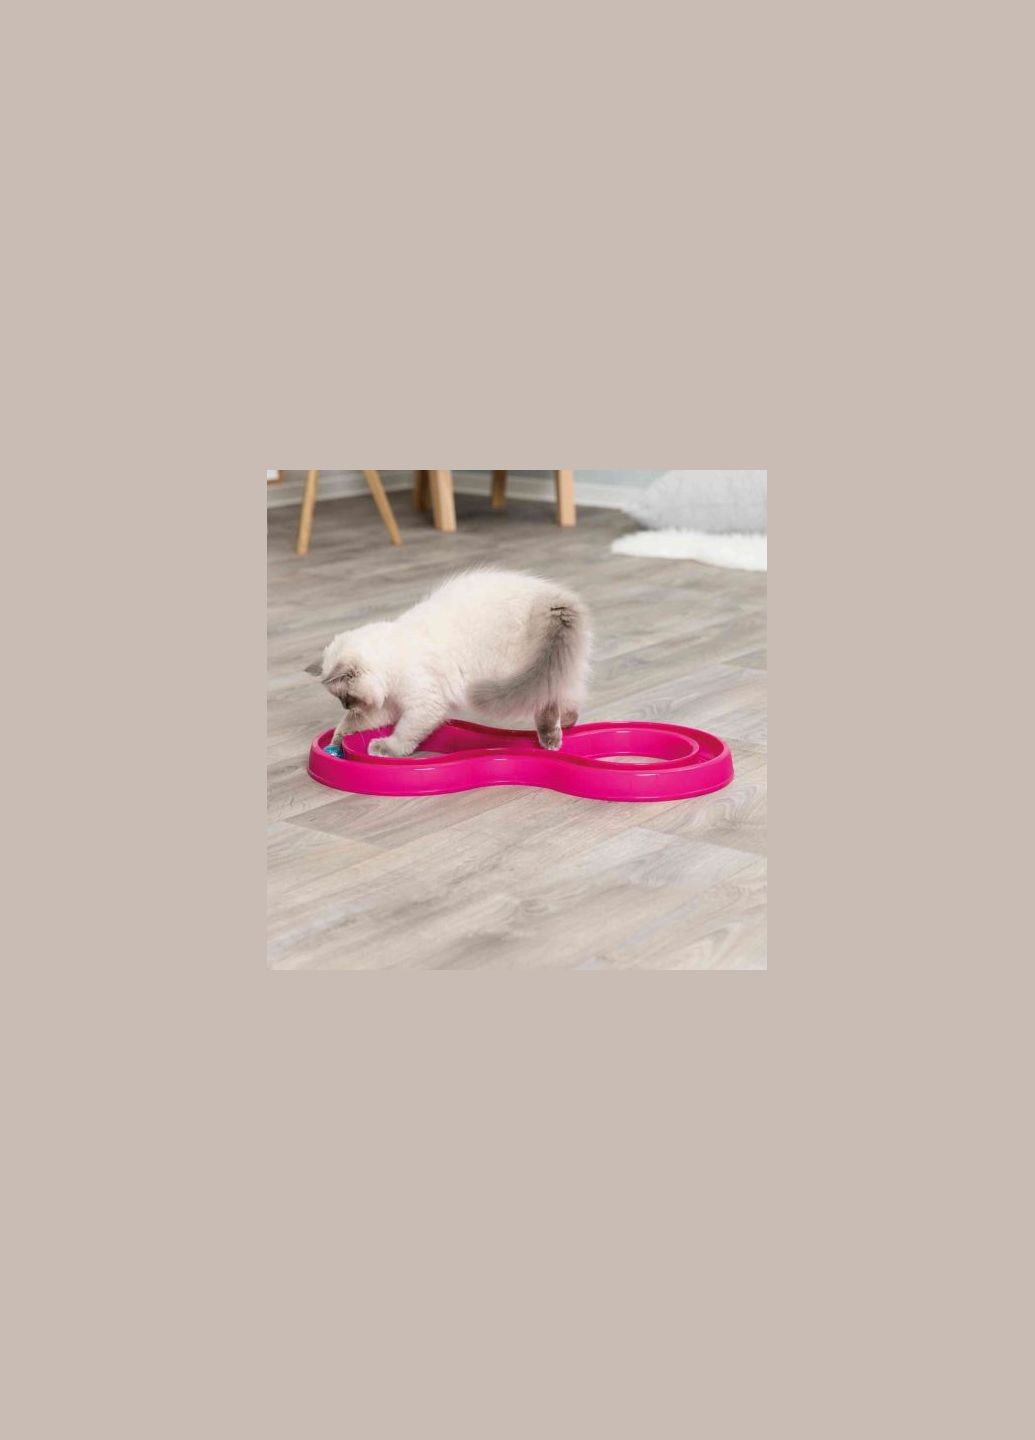 Игрушка Trixie Змейкавосьмерка с мячиком для кошек, 65х31 см (пластик) Природа игрушка trixie змейка-восьмерка с мячиком для кошек, 65х31 см (пластик) (276976063)